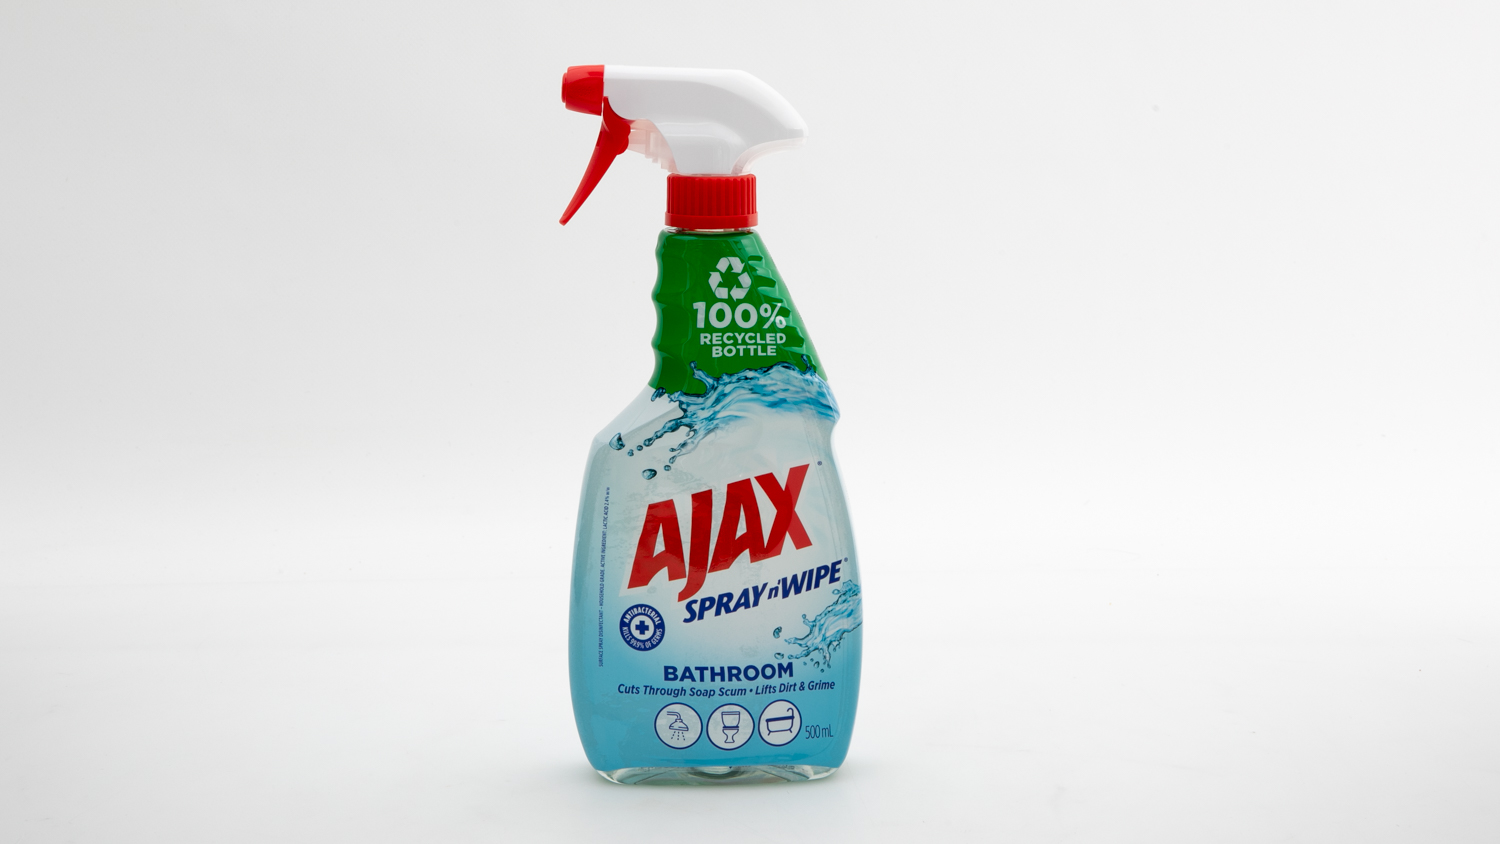 Ajax Spray n' Wipe Bathroom carousel image